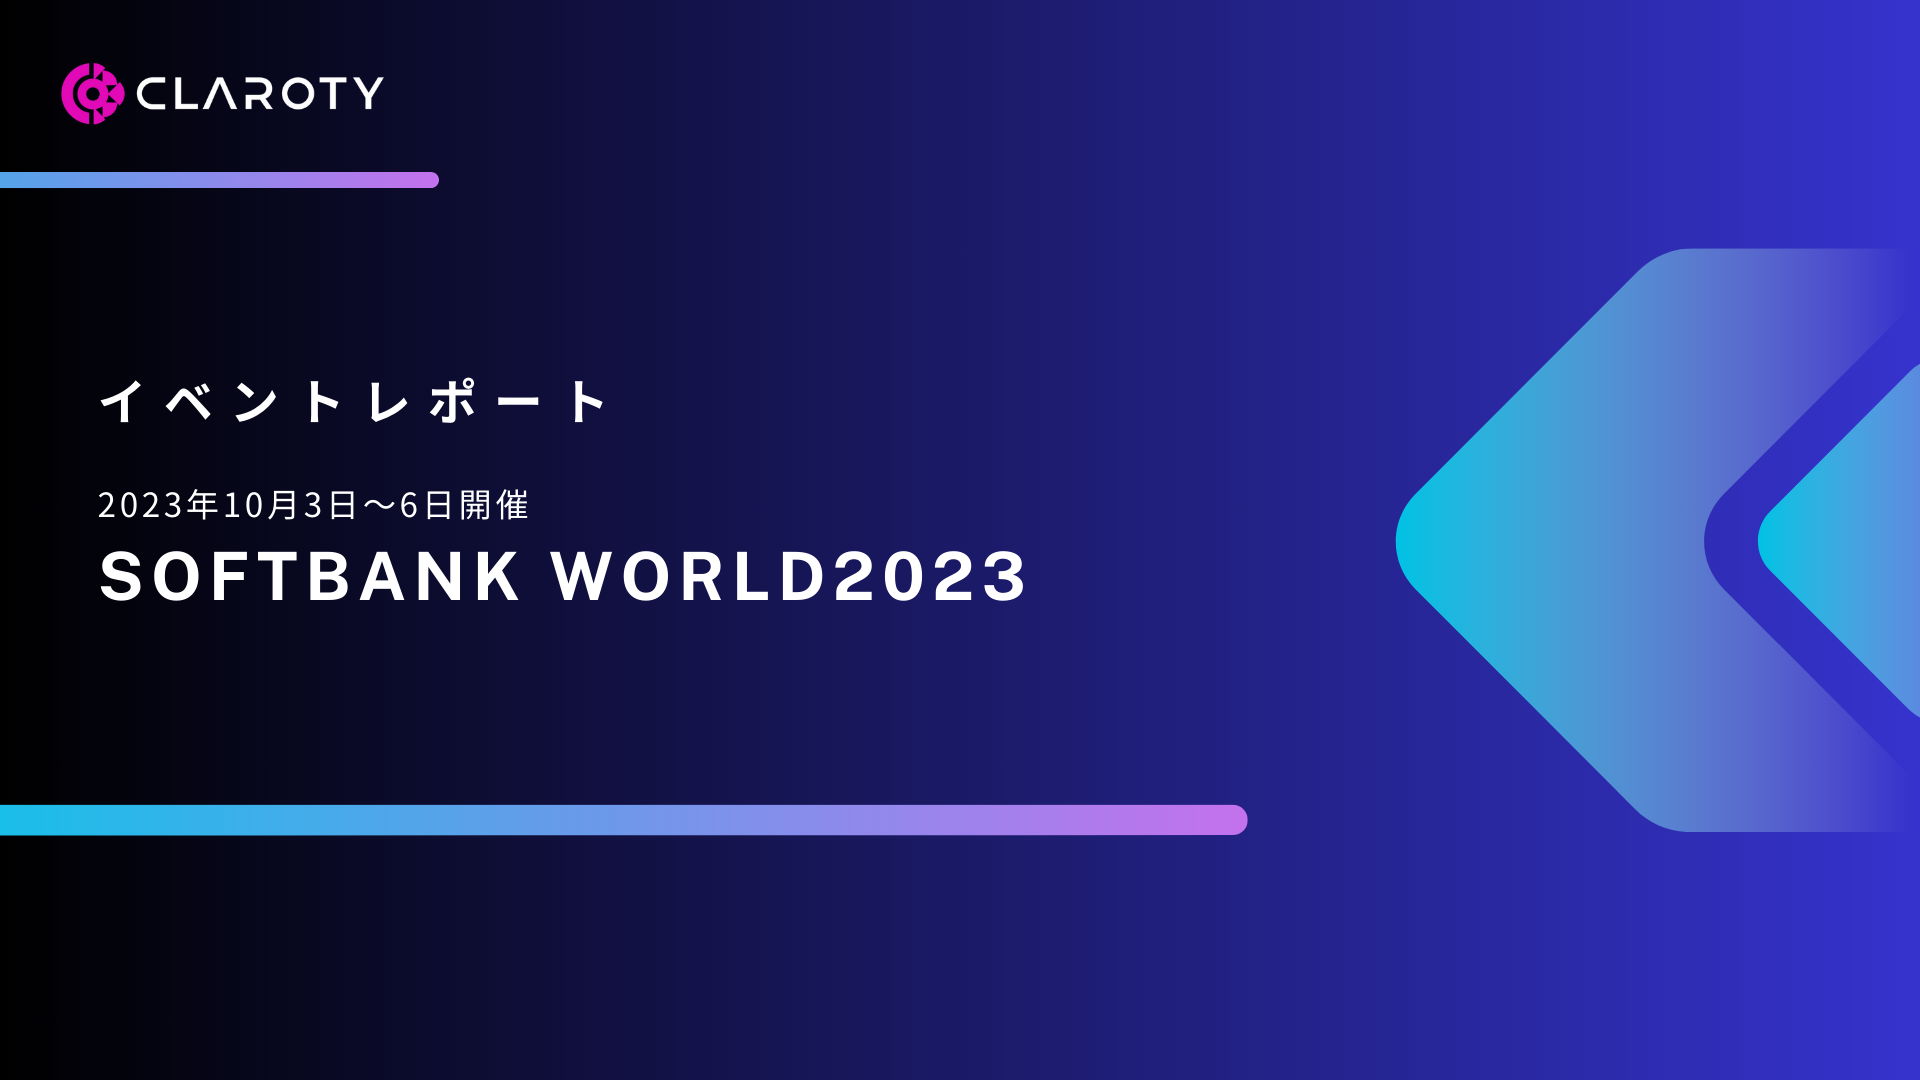 大盛況のSoftBank World 2023、クラロティブースへお越しくださりありがとうございました！